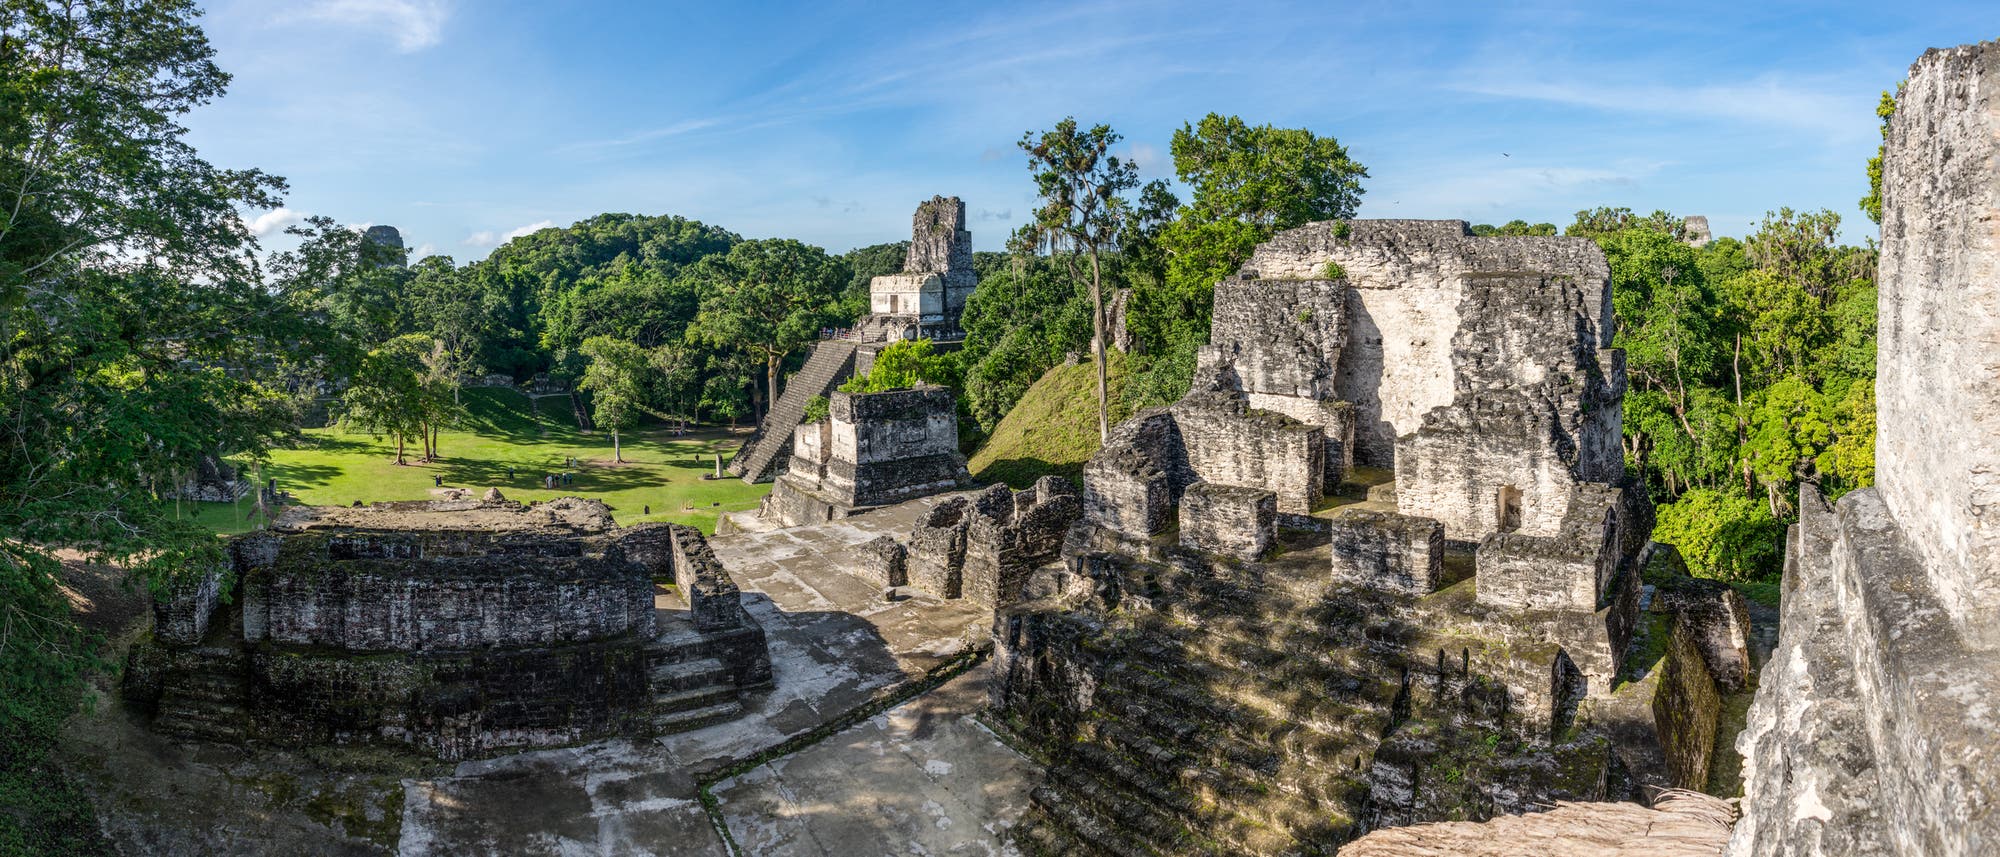 Blick von einer bin in mehrere Meter Höhe erhaltenen Maya-Ruine auf die Rasenfläche davor.